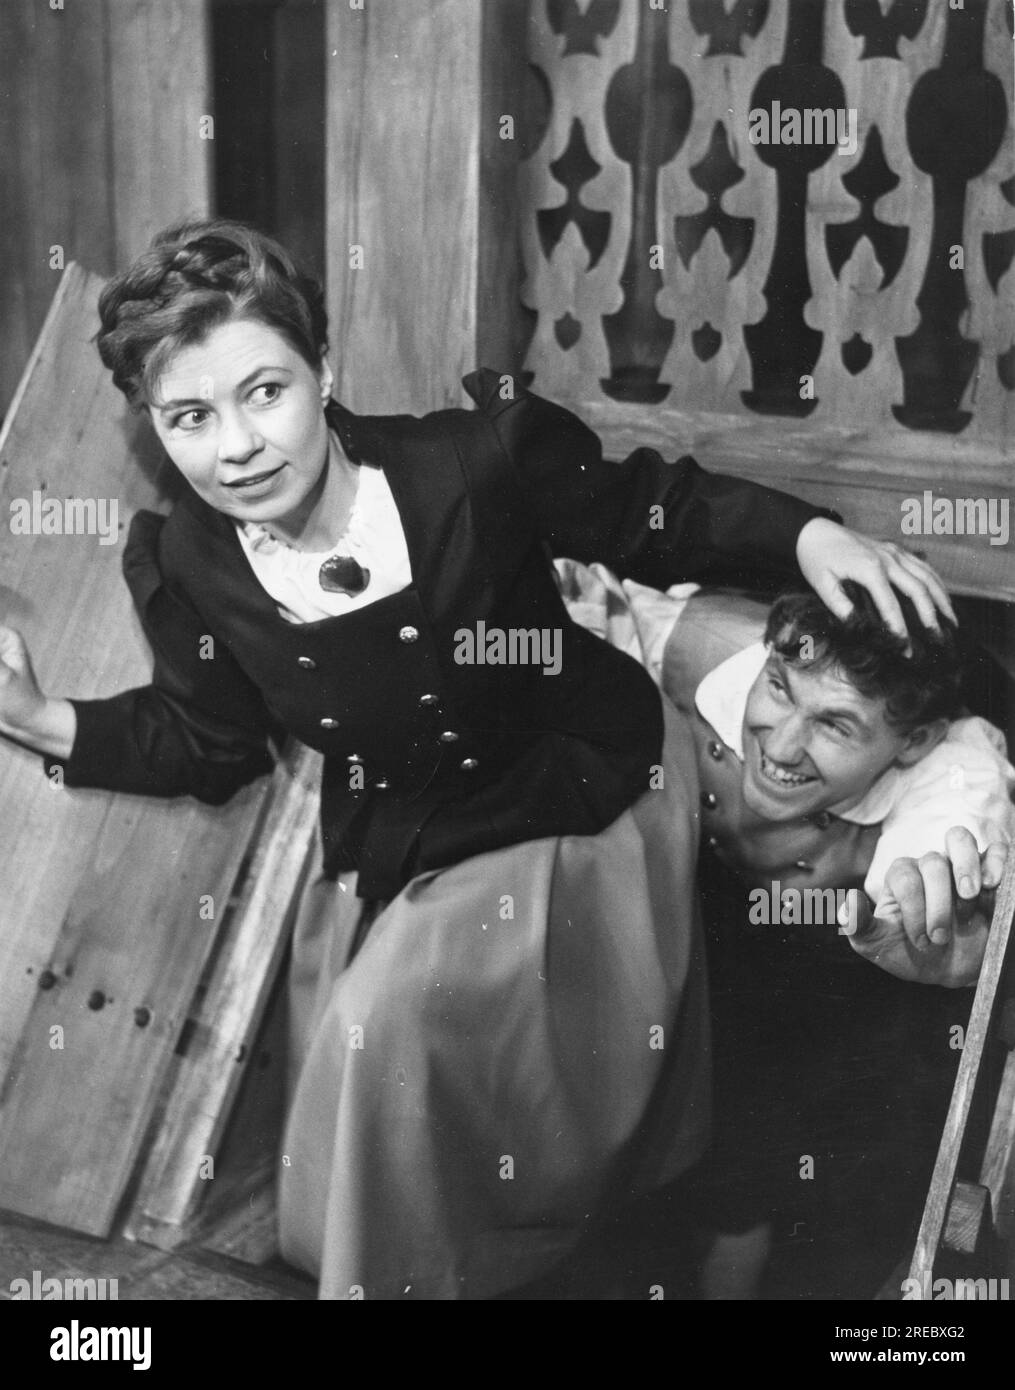 Wehling, Christa, 6.3.1928 - 17.3,1996, actrice de théâtre allemande avec Edgar Bessen, INFO-AUTORISATION-DROITS-SUPPLÉMENTAIRES-NON-DISPONIBLE Banque D'Images